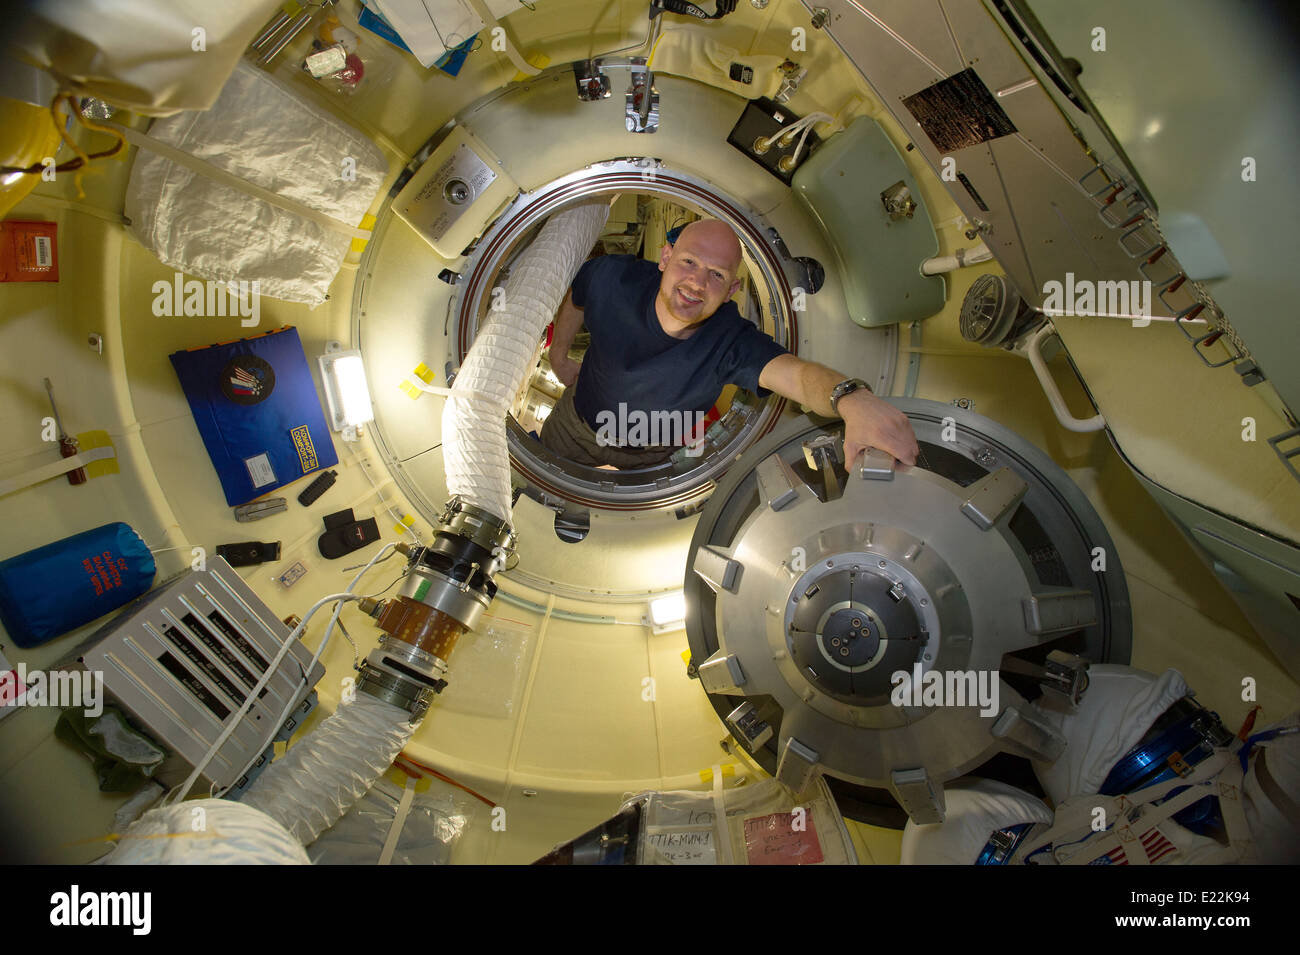 ESA-Astronaut Alexander Gerst, Expedition 40 Flugingenieur in der Rassvet Mini-Forschung Modul 1 Station von der internationalen Raumstation ISS 6. Juni 2014. Stockfoto